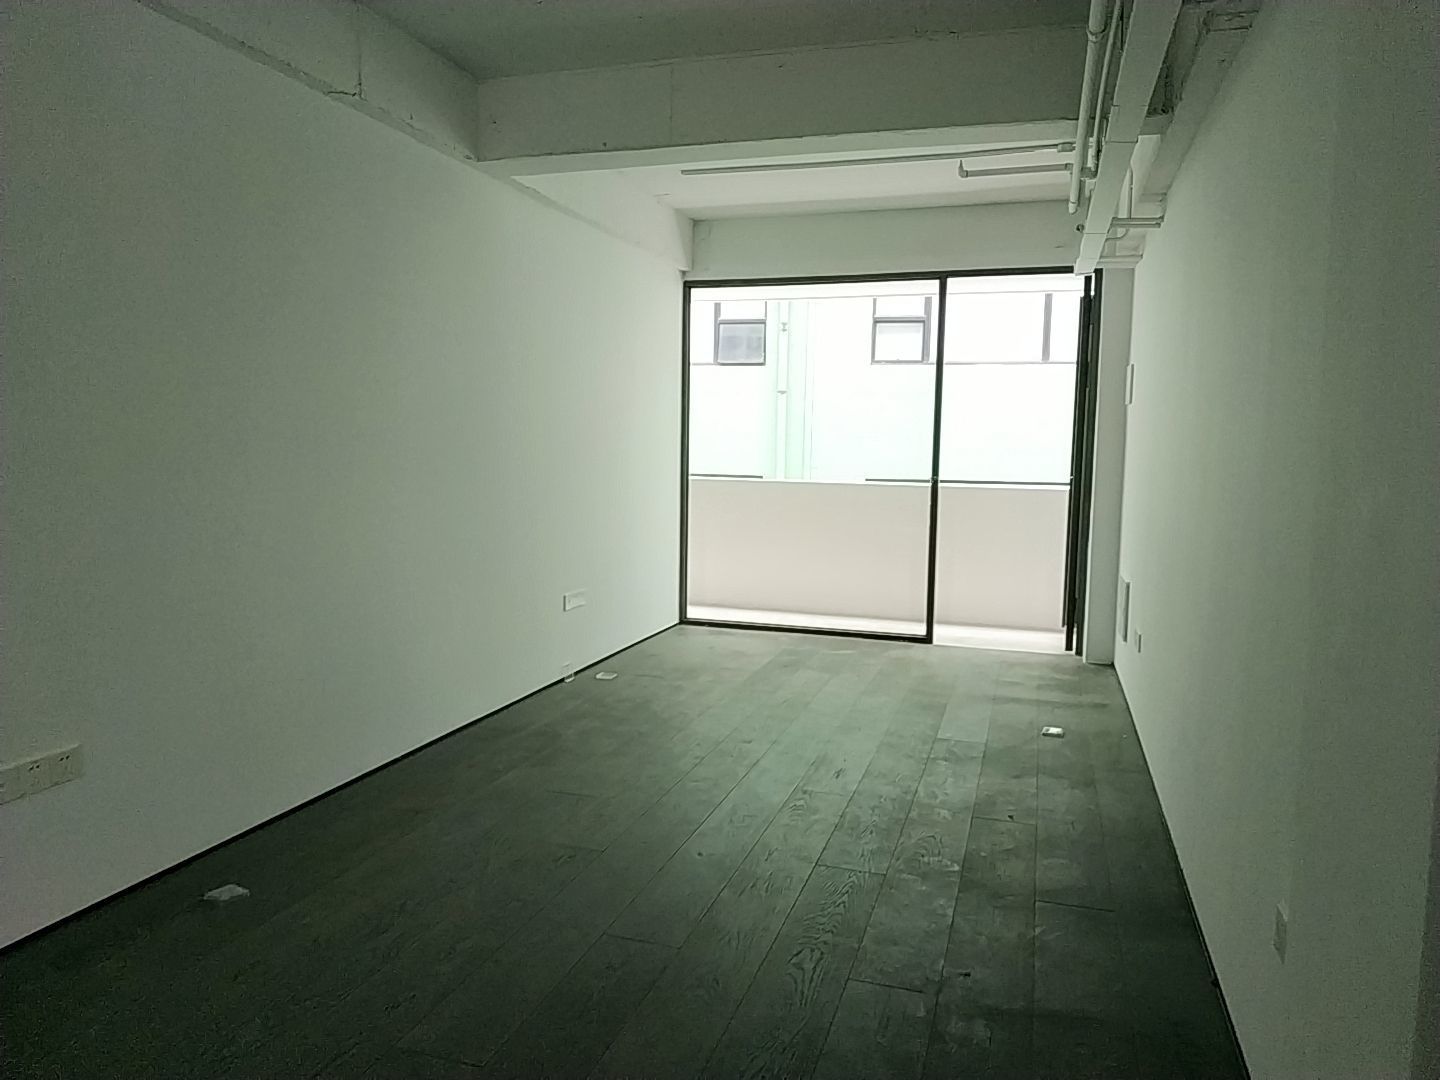 现所创意园124平米办公室出租_8.50元/m²/天